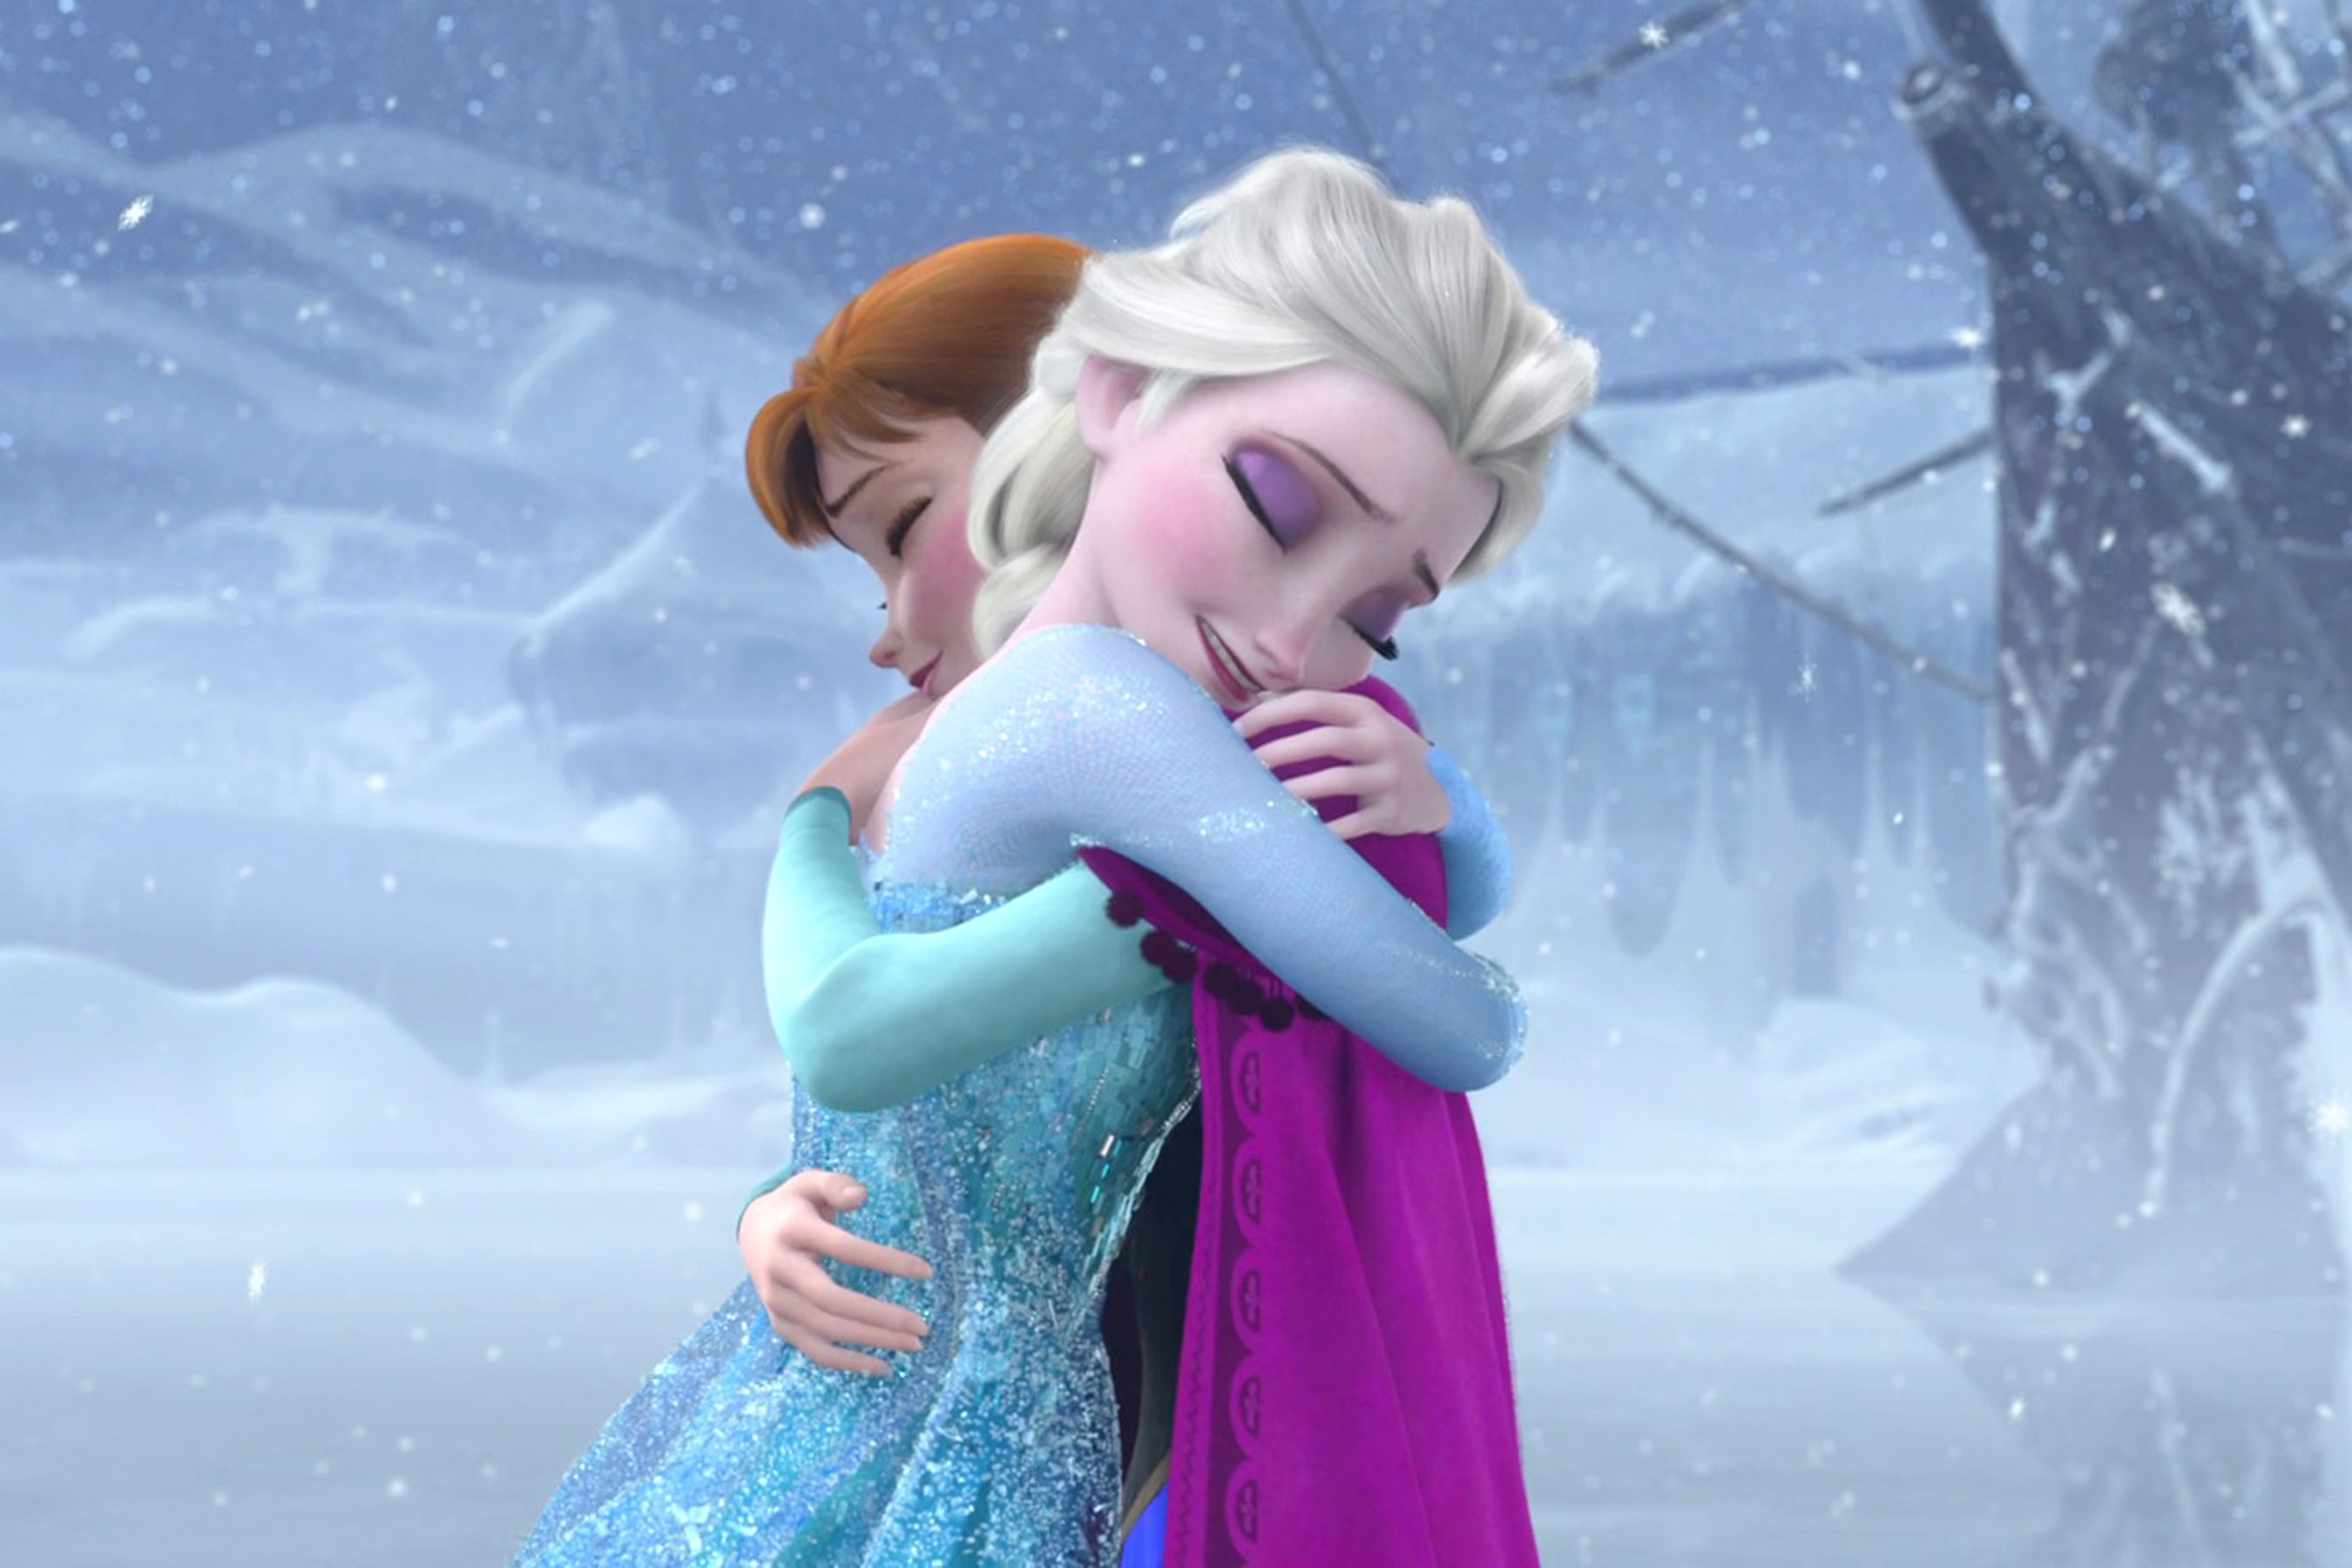 Frozen original ending revealed for first time | EW.com